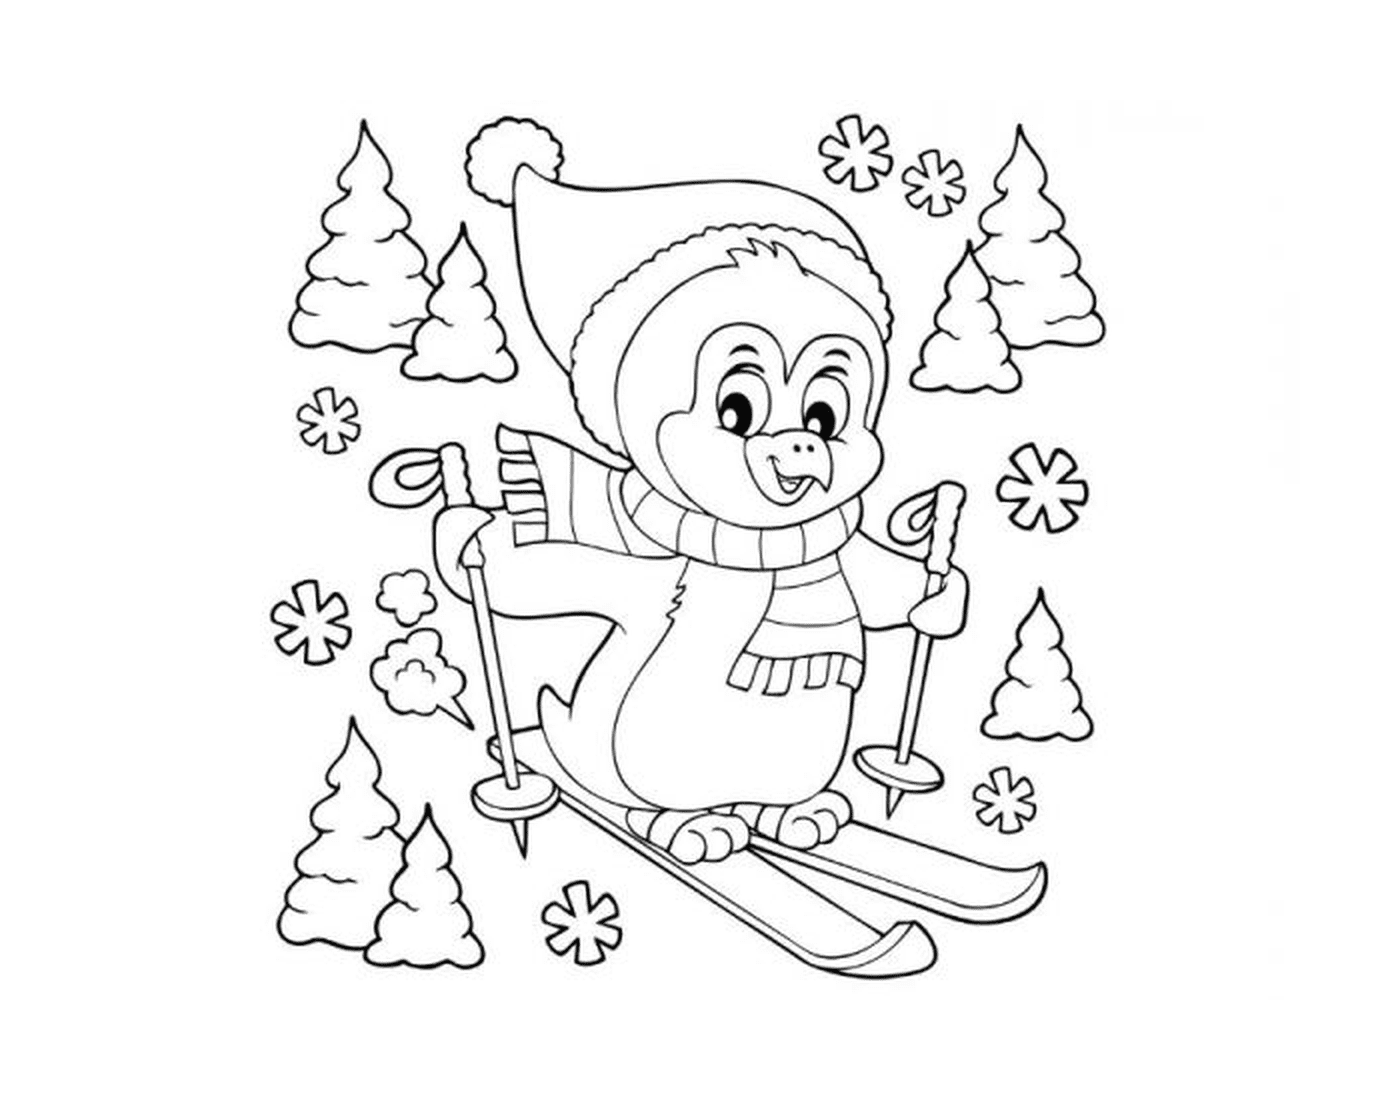  企鹅滑雪 